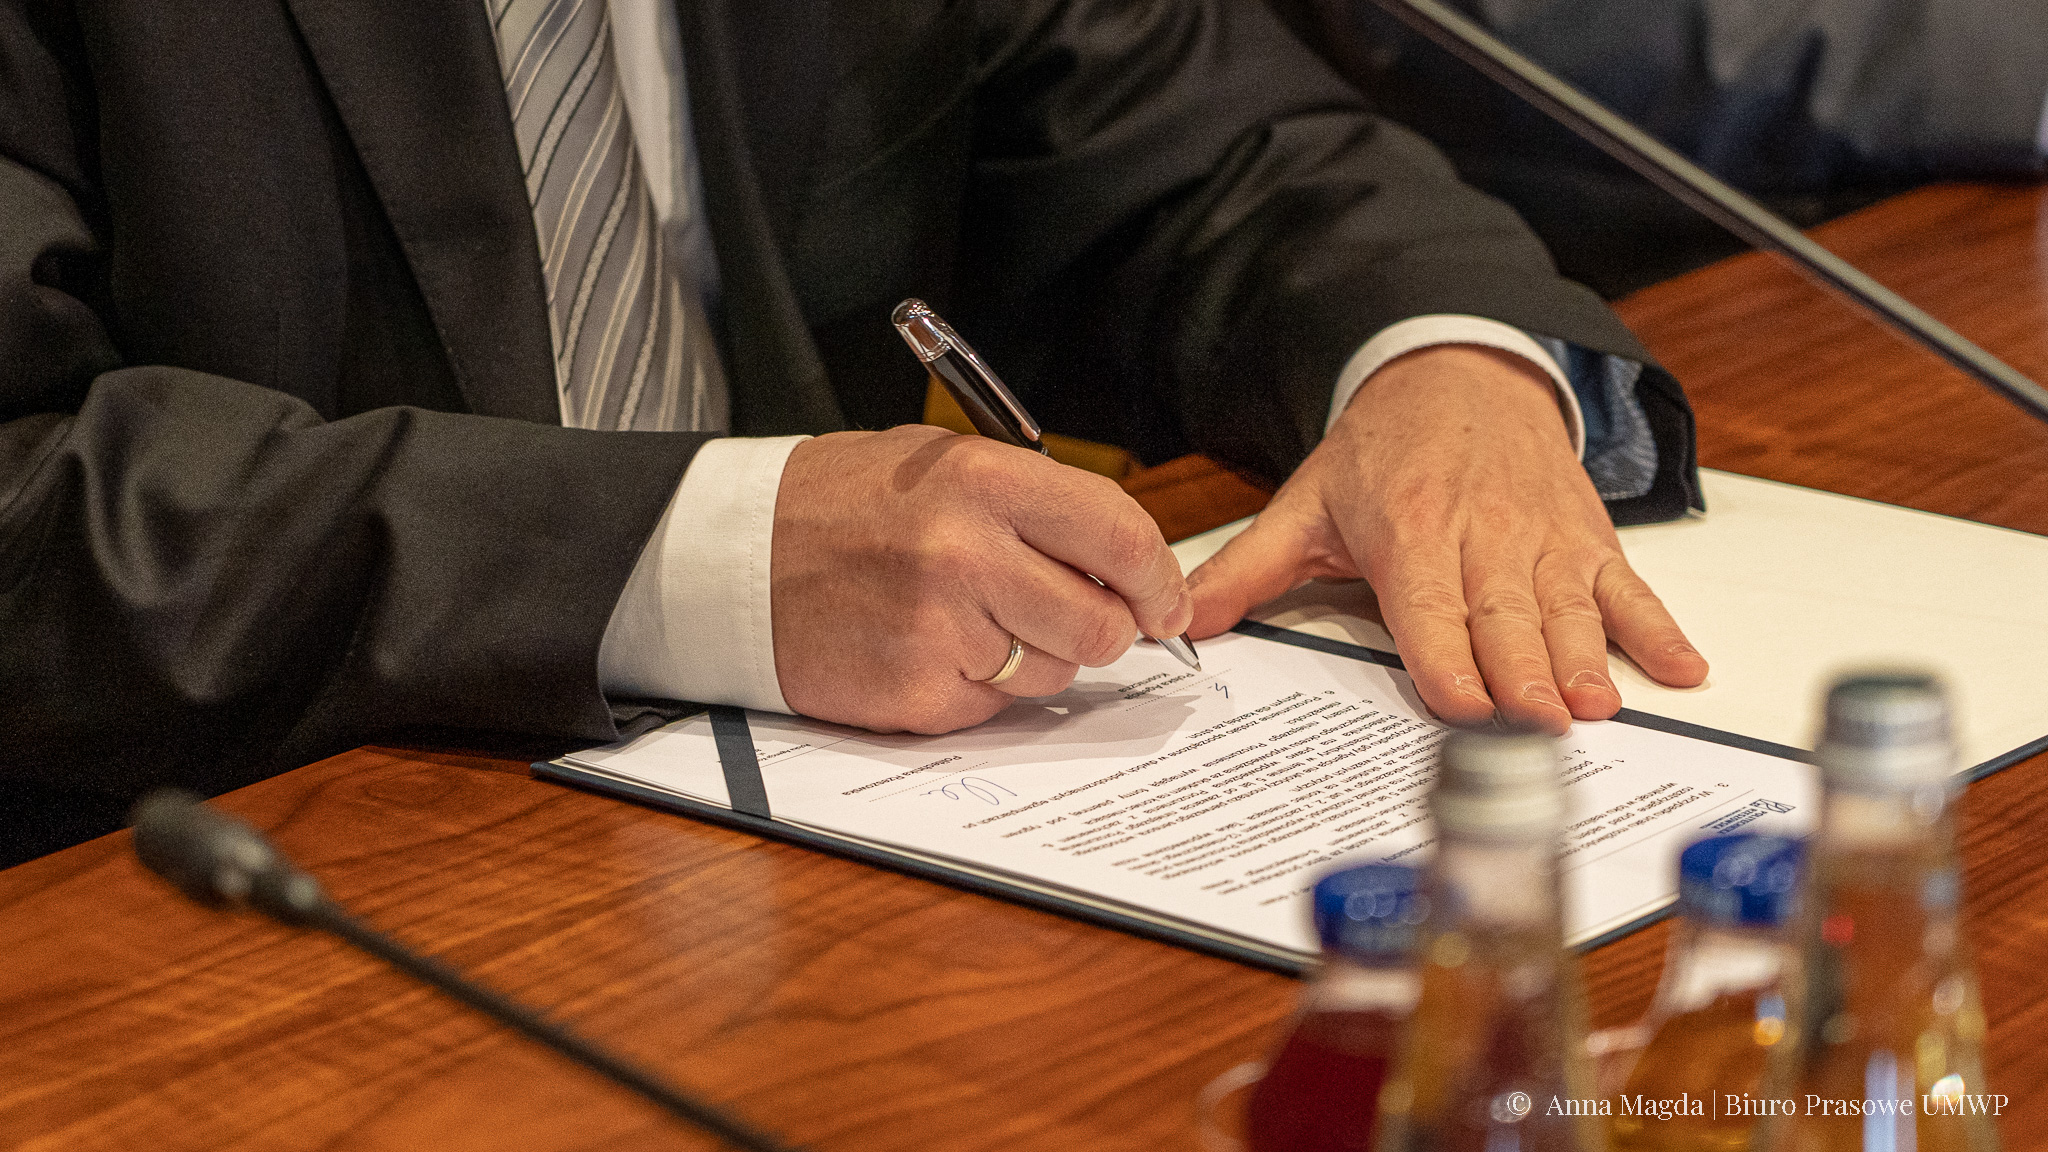 Zdjęcie rąk podpisujących dokument piórem.